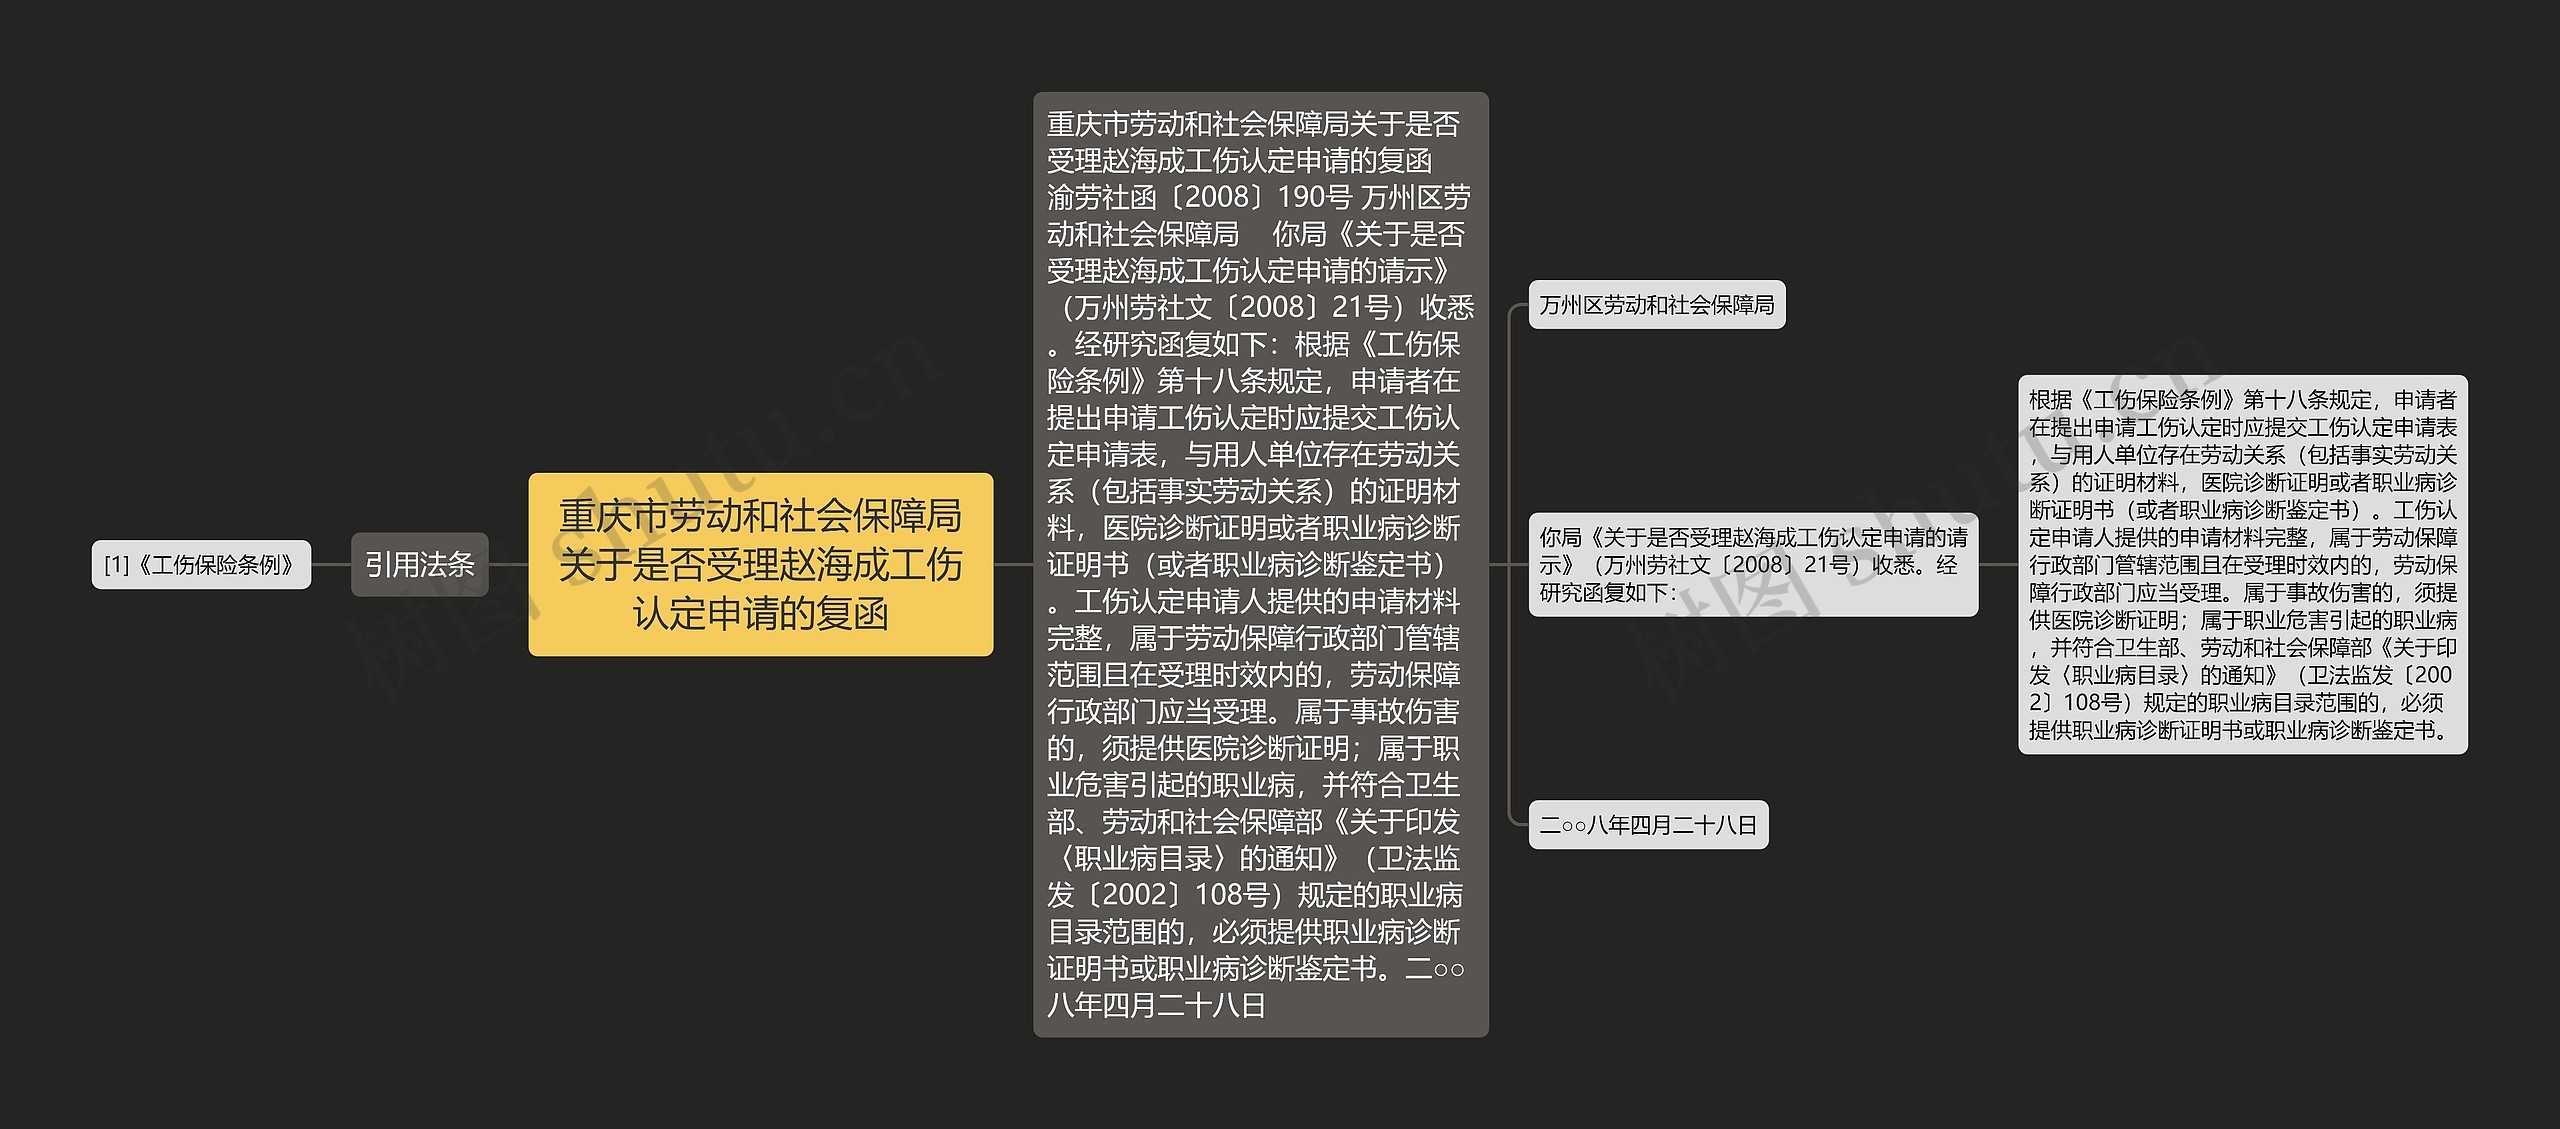 重庆市劳动和社会保障局关于是否受理赵海成工伤认定申请的复函思维导图